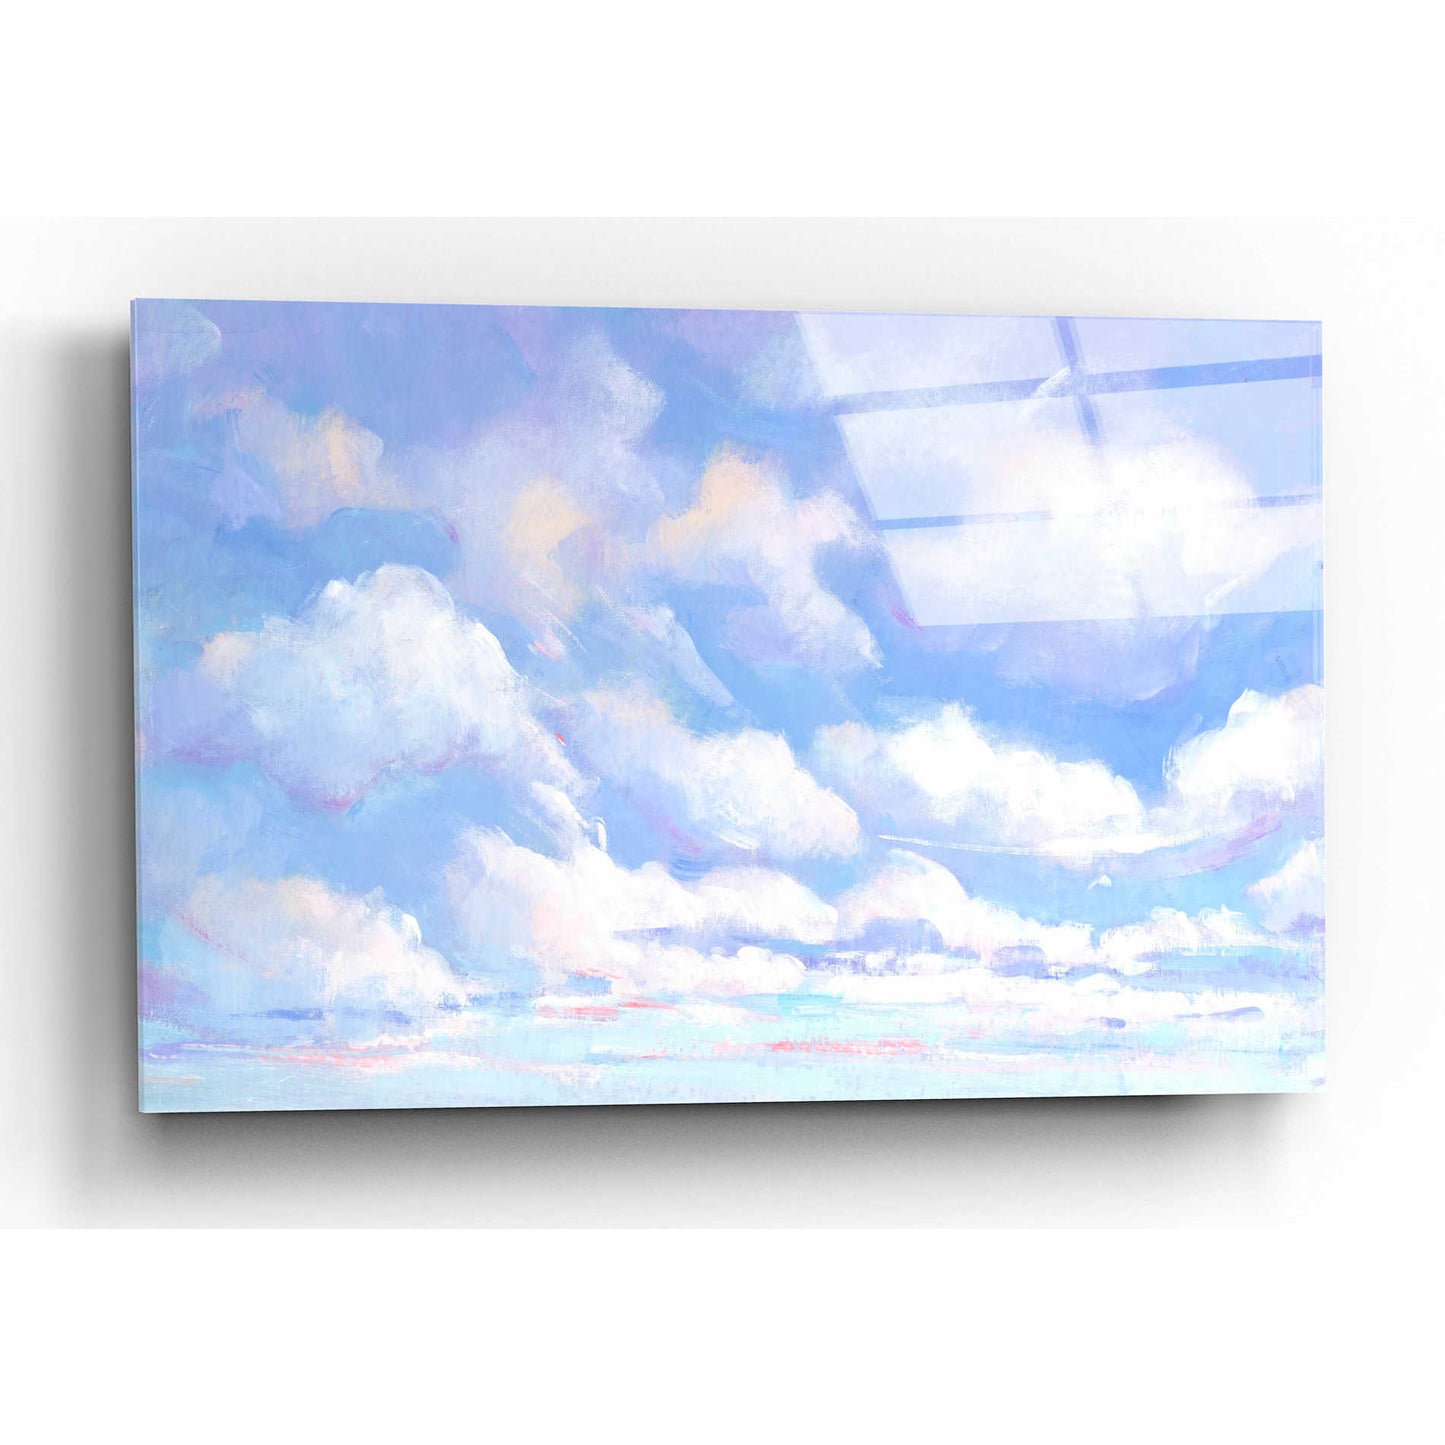 Epic Art 'Sky High I' by Tim O'Toole, Acrylic Glass Wall Art,16x12